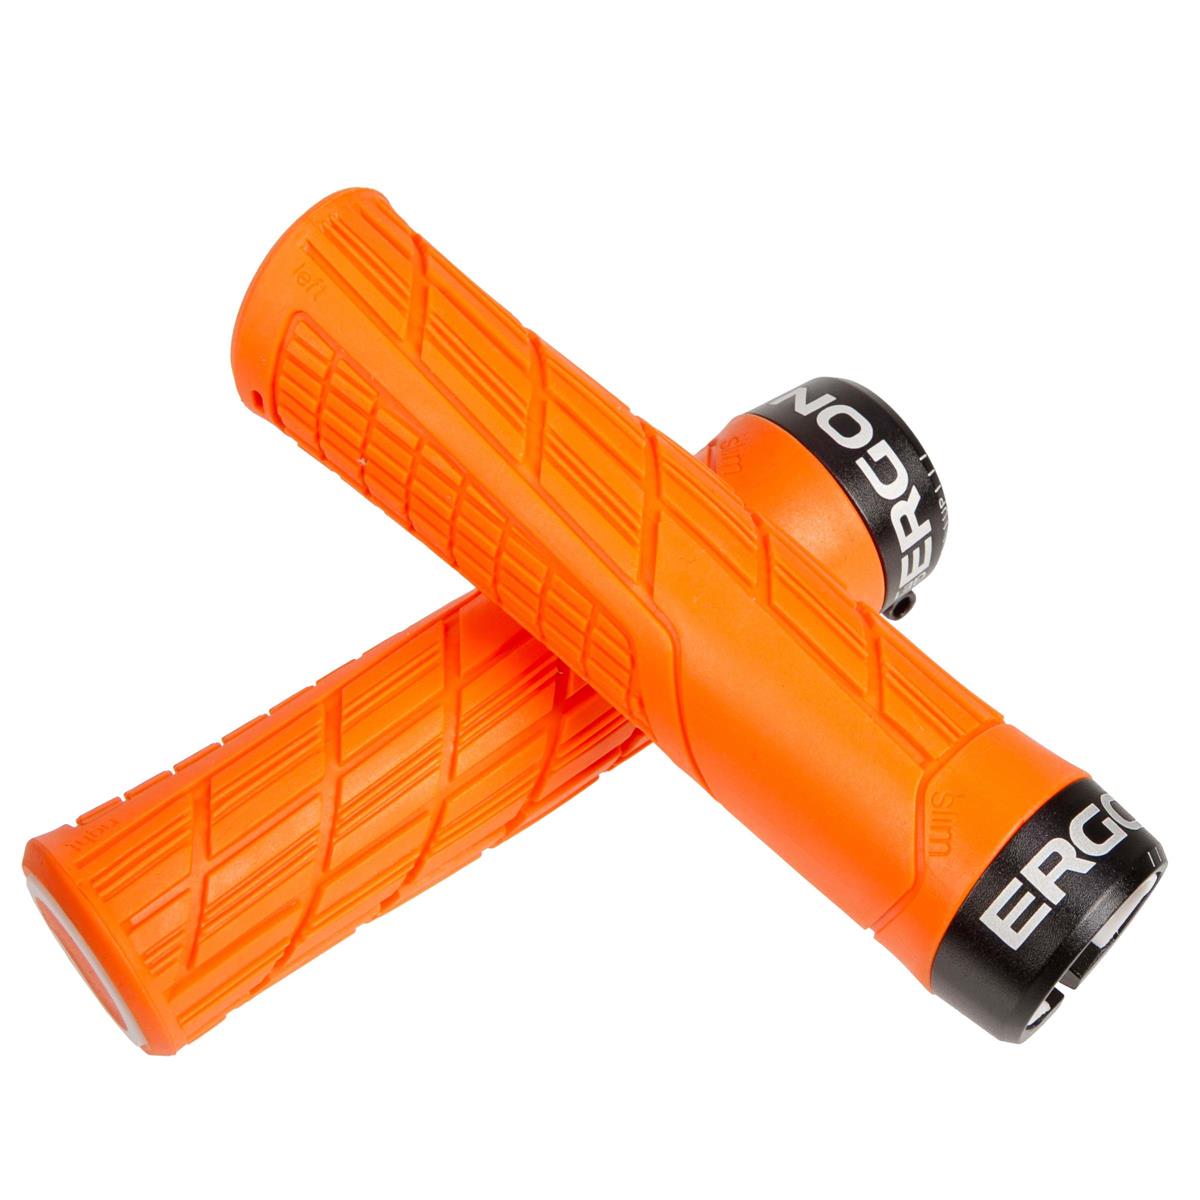 Ergon MTB-Griffe GE1 Evo Slim Lock-On, Juicy Orange